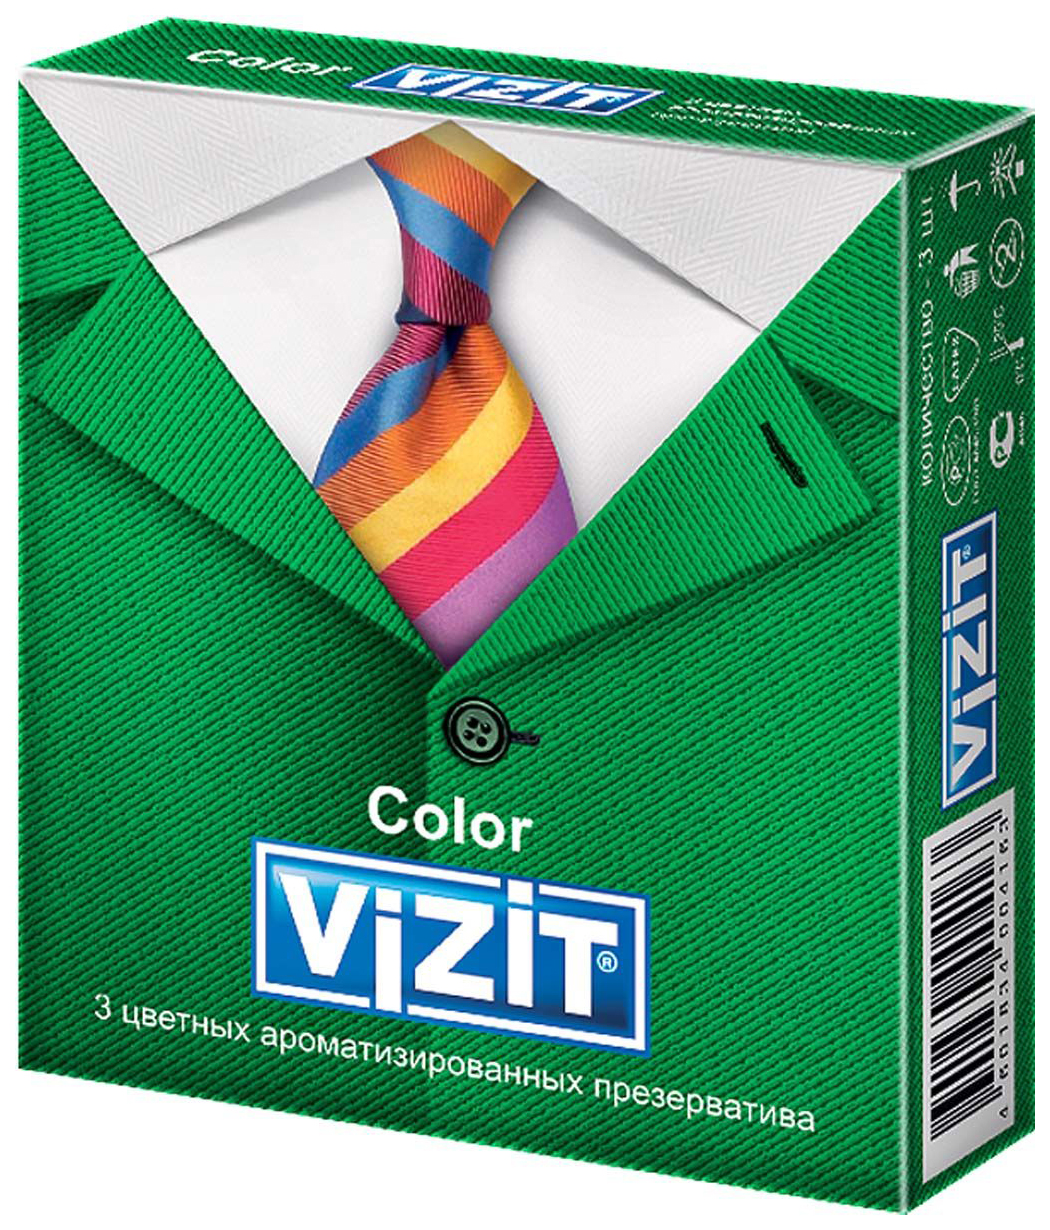 Купить Презервативы Vizit Color ароматизированные 3 шт.